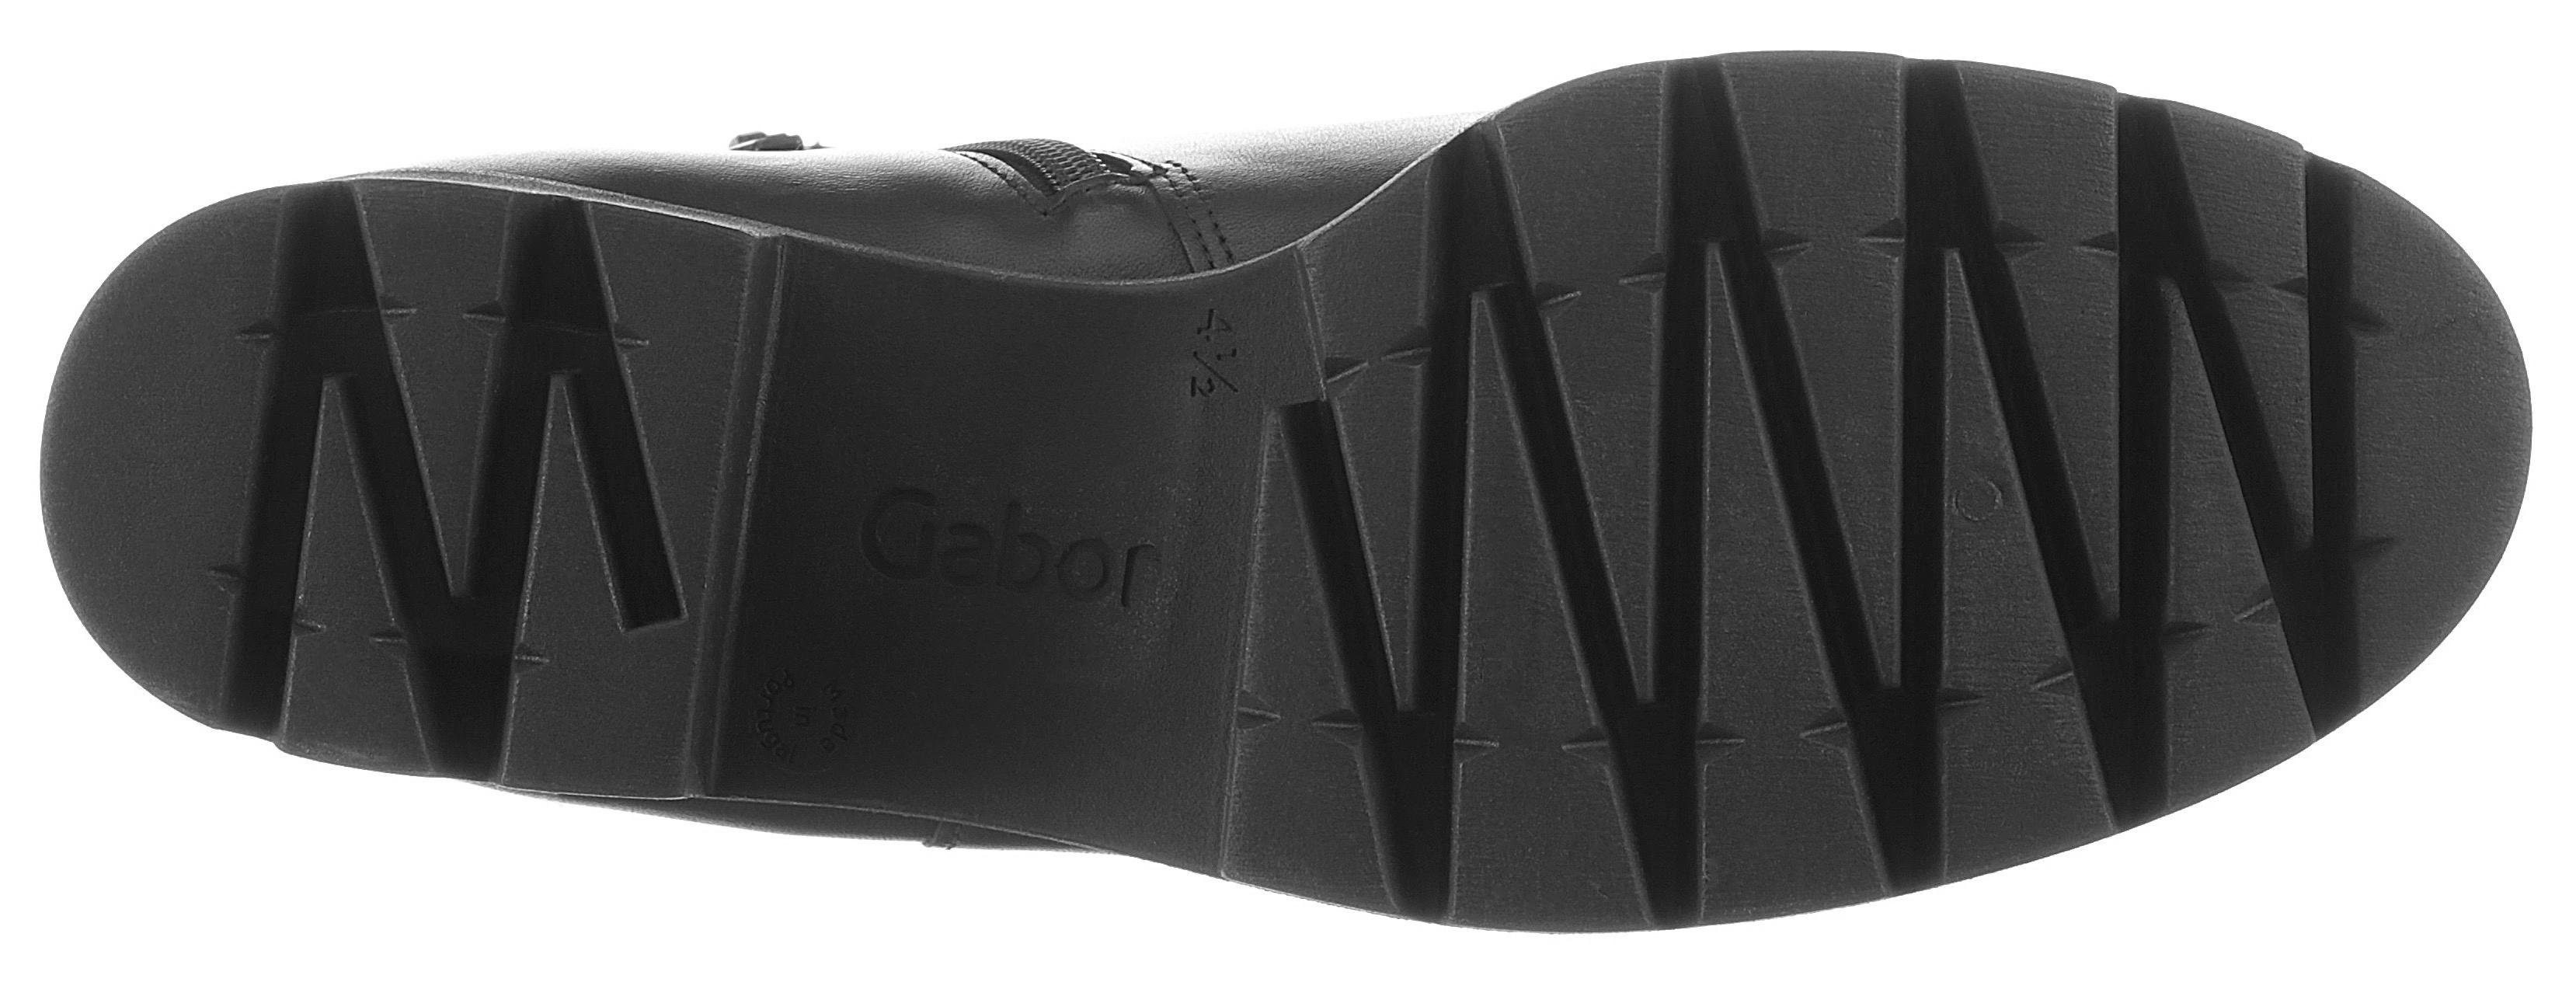 Gabor Chelseaboots mit Profilsohle schwarz angesagter